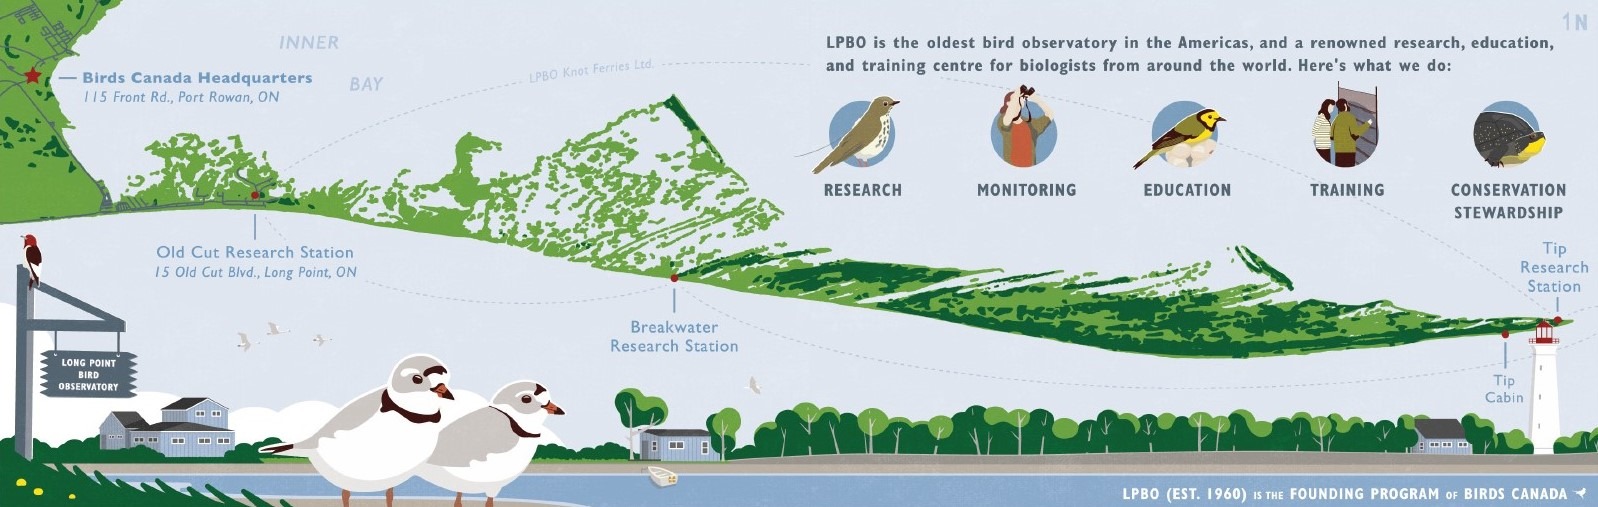 一个快乐的, 彩色图片，展示了长角半岛的地图和三个长角鸟类观测站的位置:尖, 防浪堤, 和老切. 